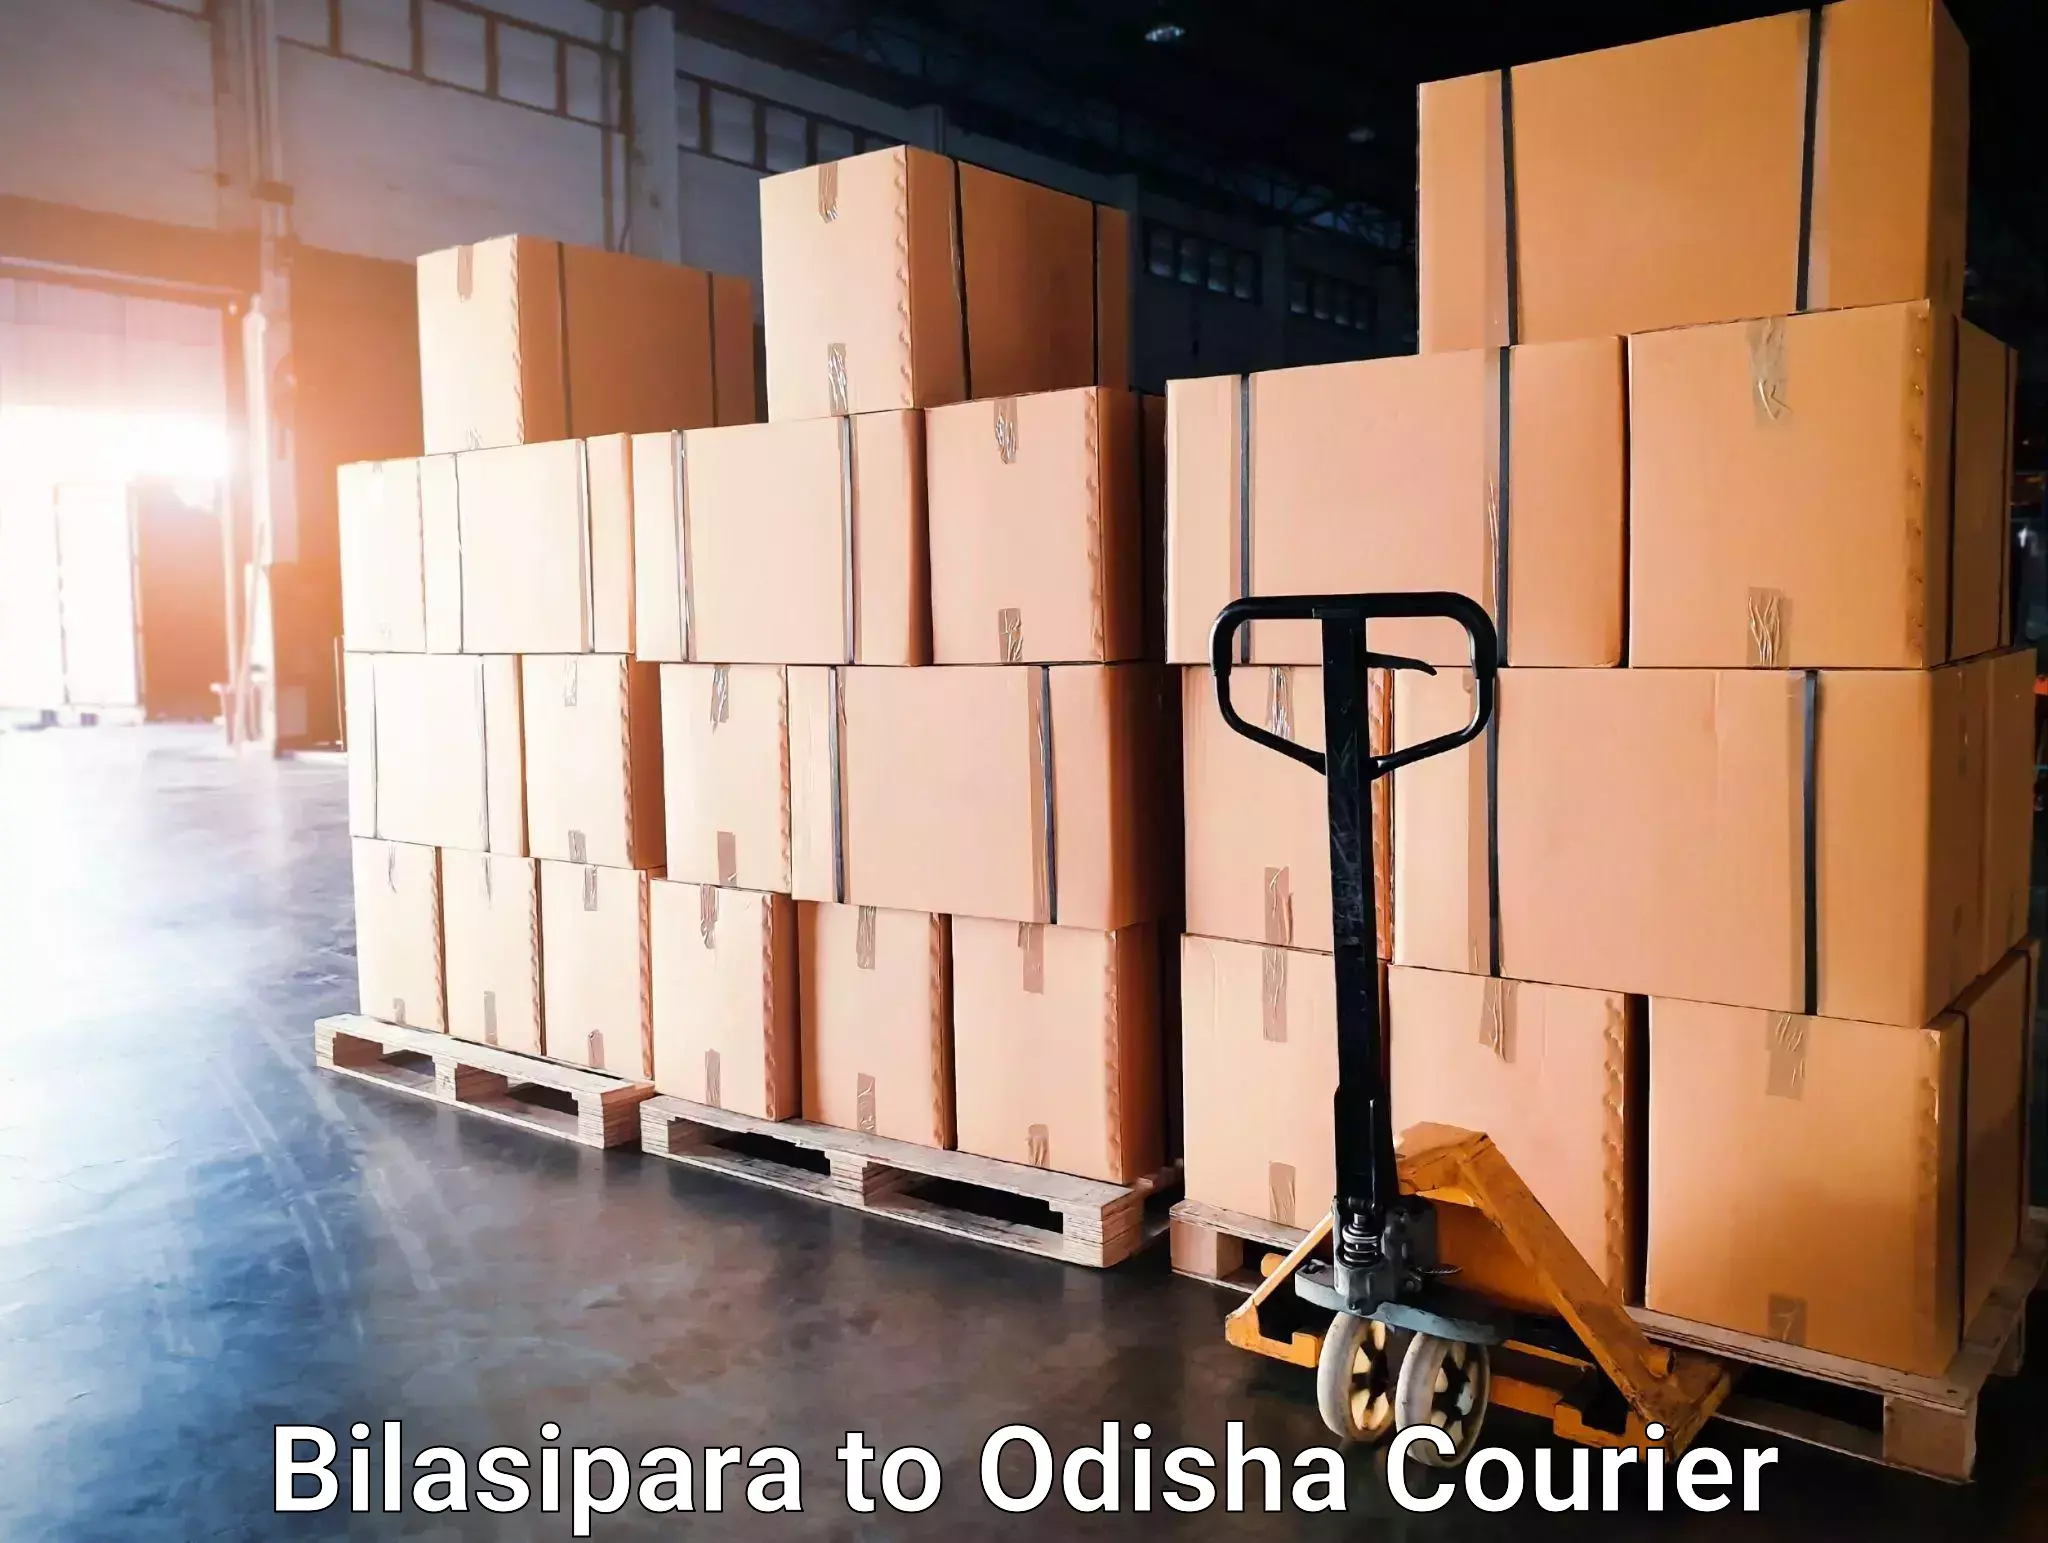 User-friendly courier app Bilasipara to Jagannathprasad